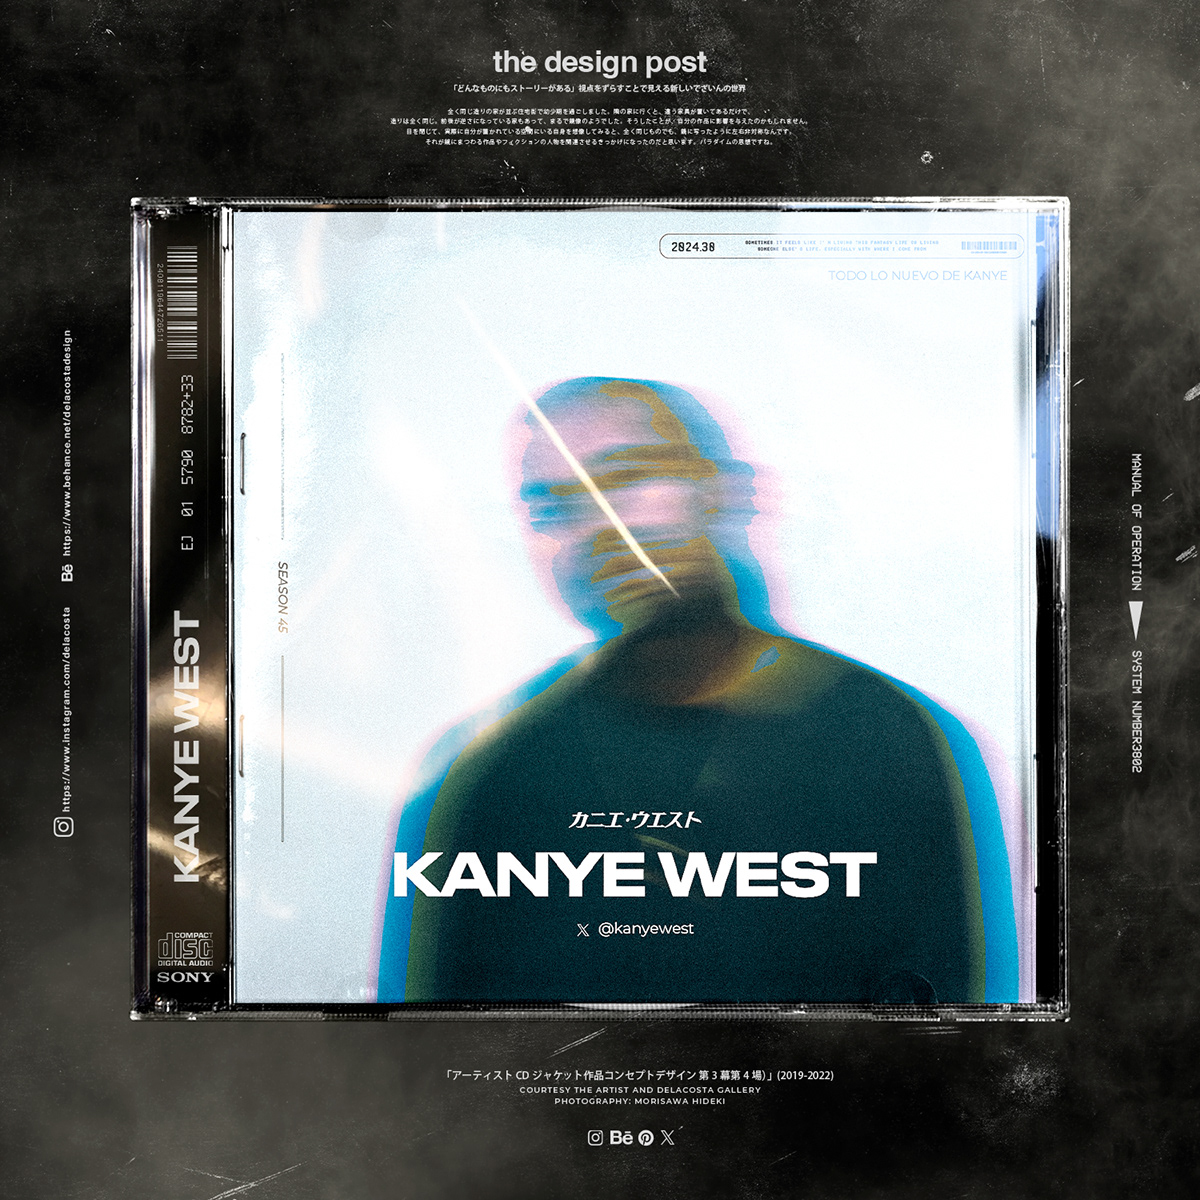 kanyewest covermagazine cddesign singlecover albumcover kanye